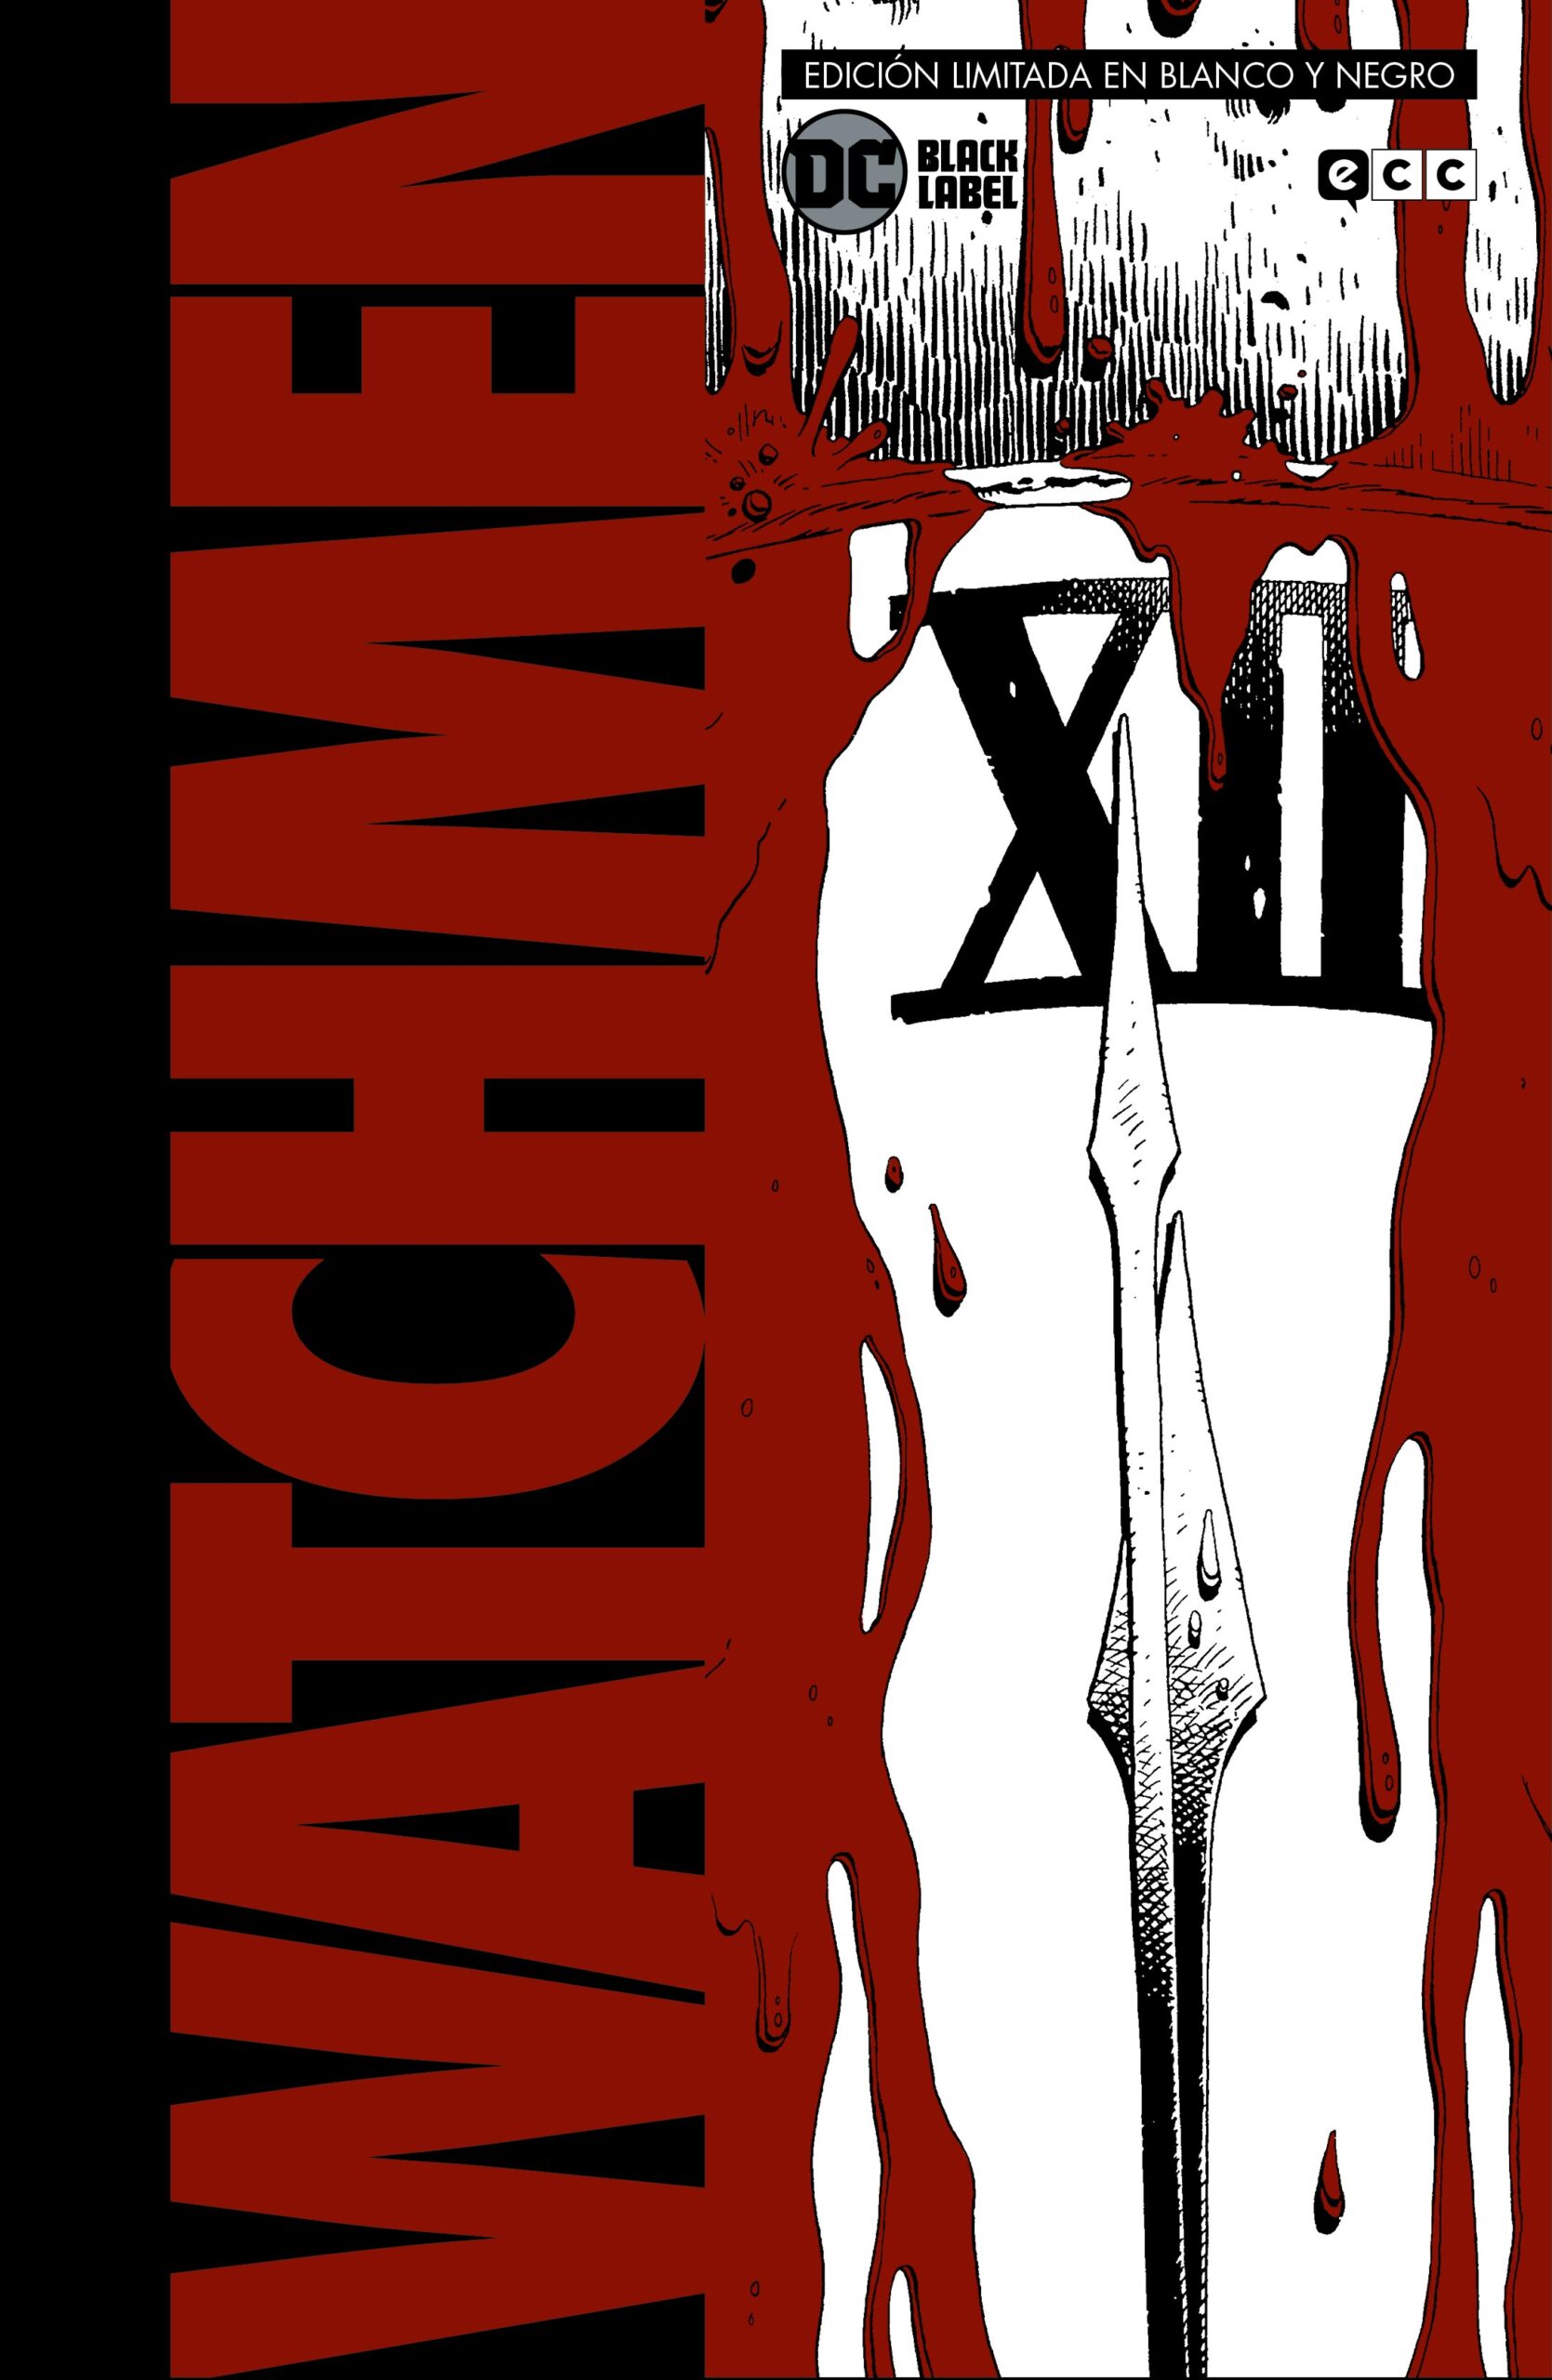 watchmen-edicion-deluxe-limitada-en-blanco-y-negro-ecc-espana